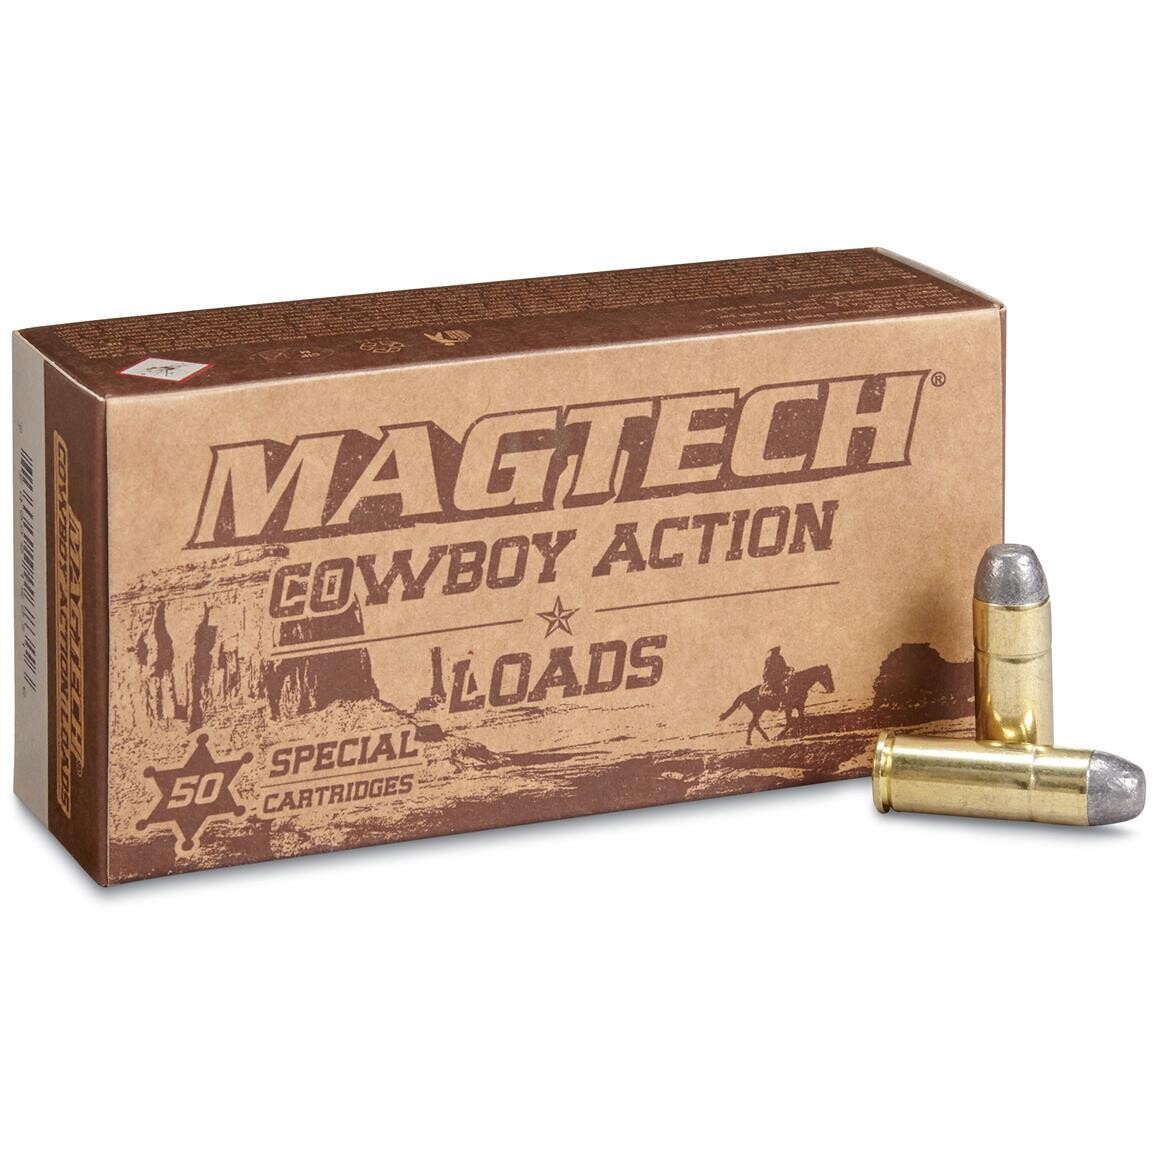 Magtech 44-40 Win 225gr LFN Cowboy Action x 50